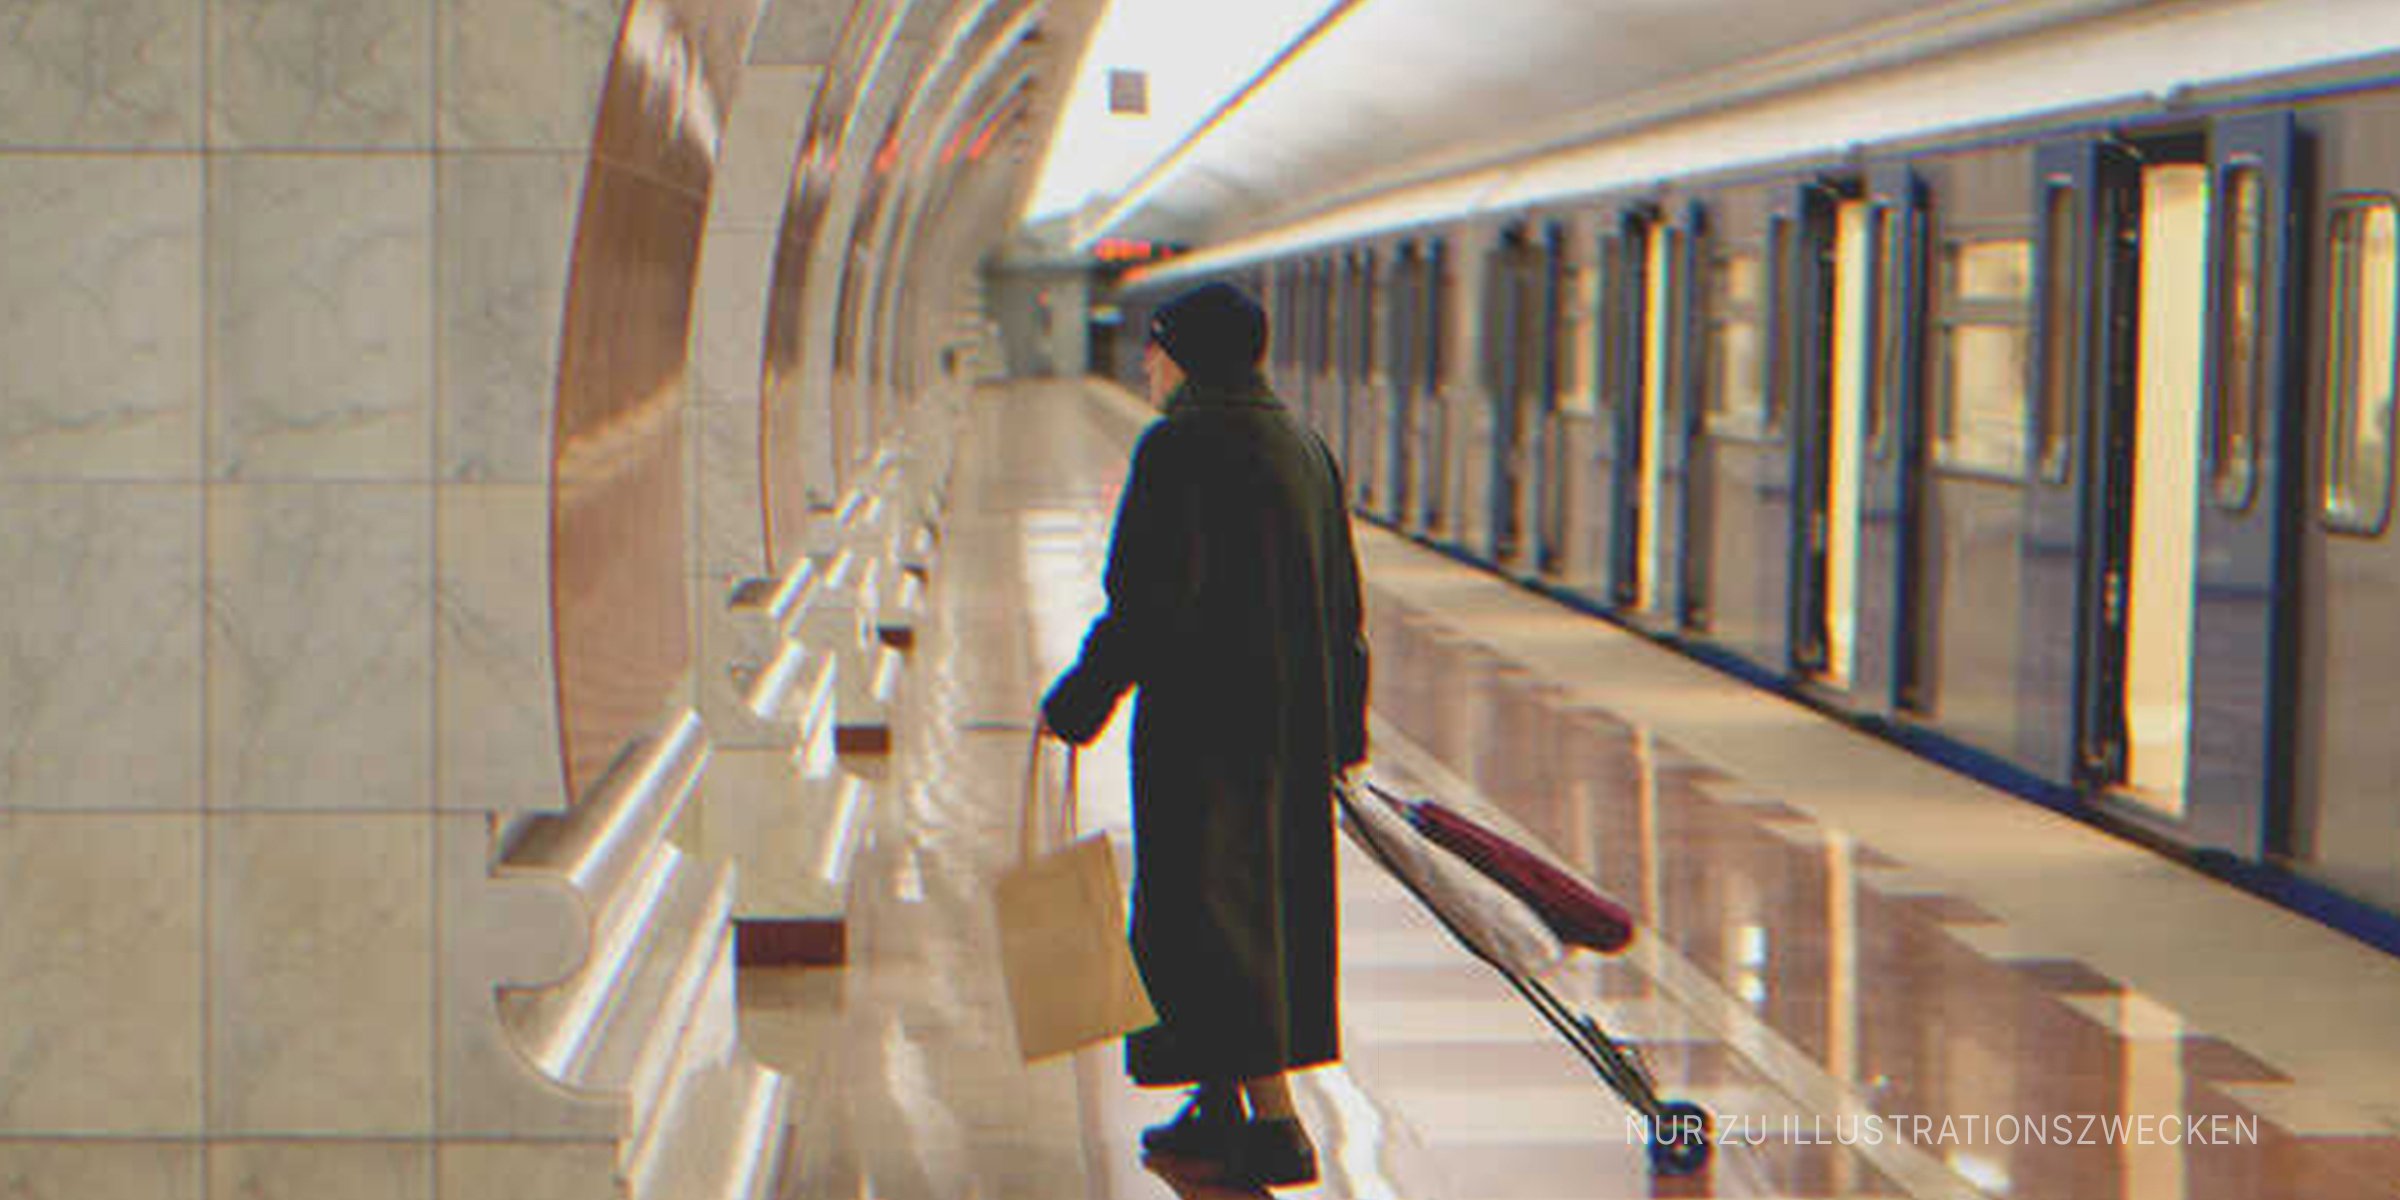 Einsame alte Dame in der U-Bahn. | Quelle: Shutterstock